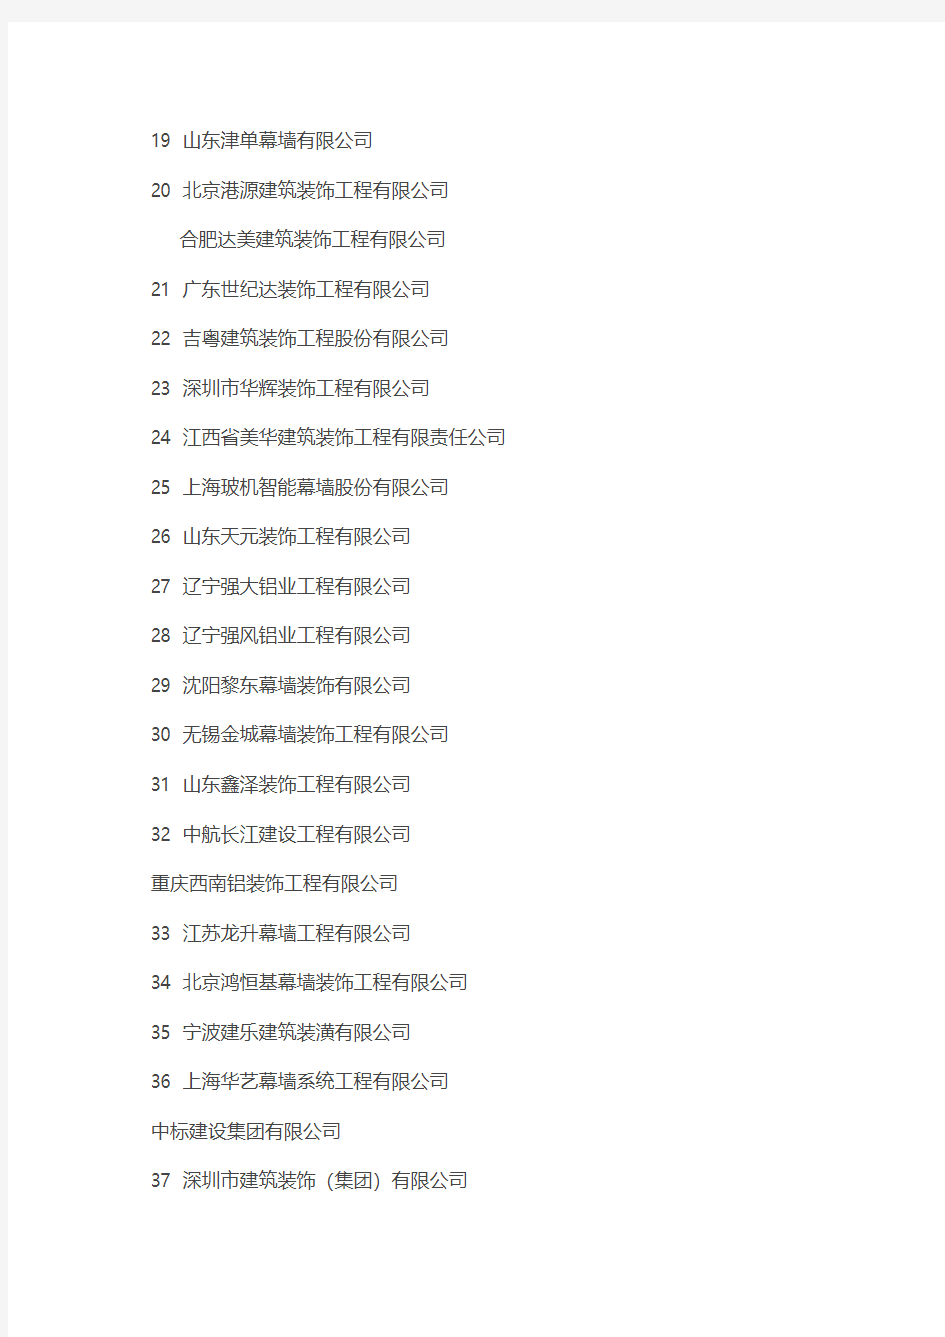 2013年度中国建筑幕墙行业50强企业排名公告名单